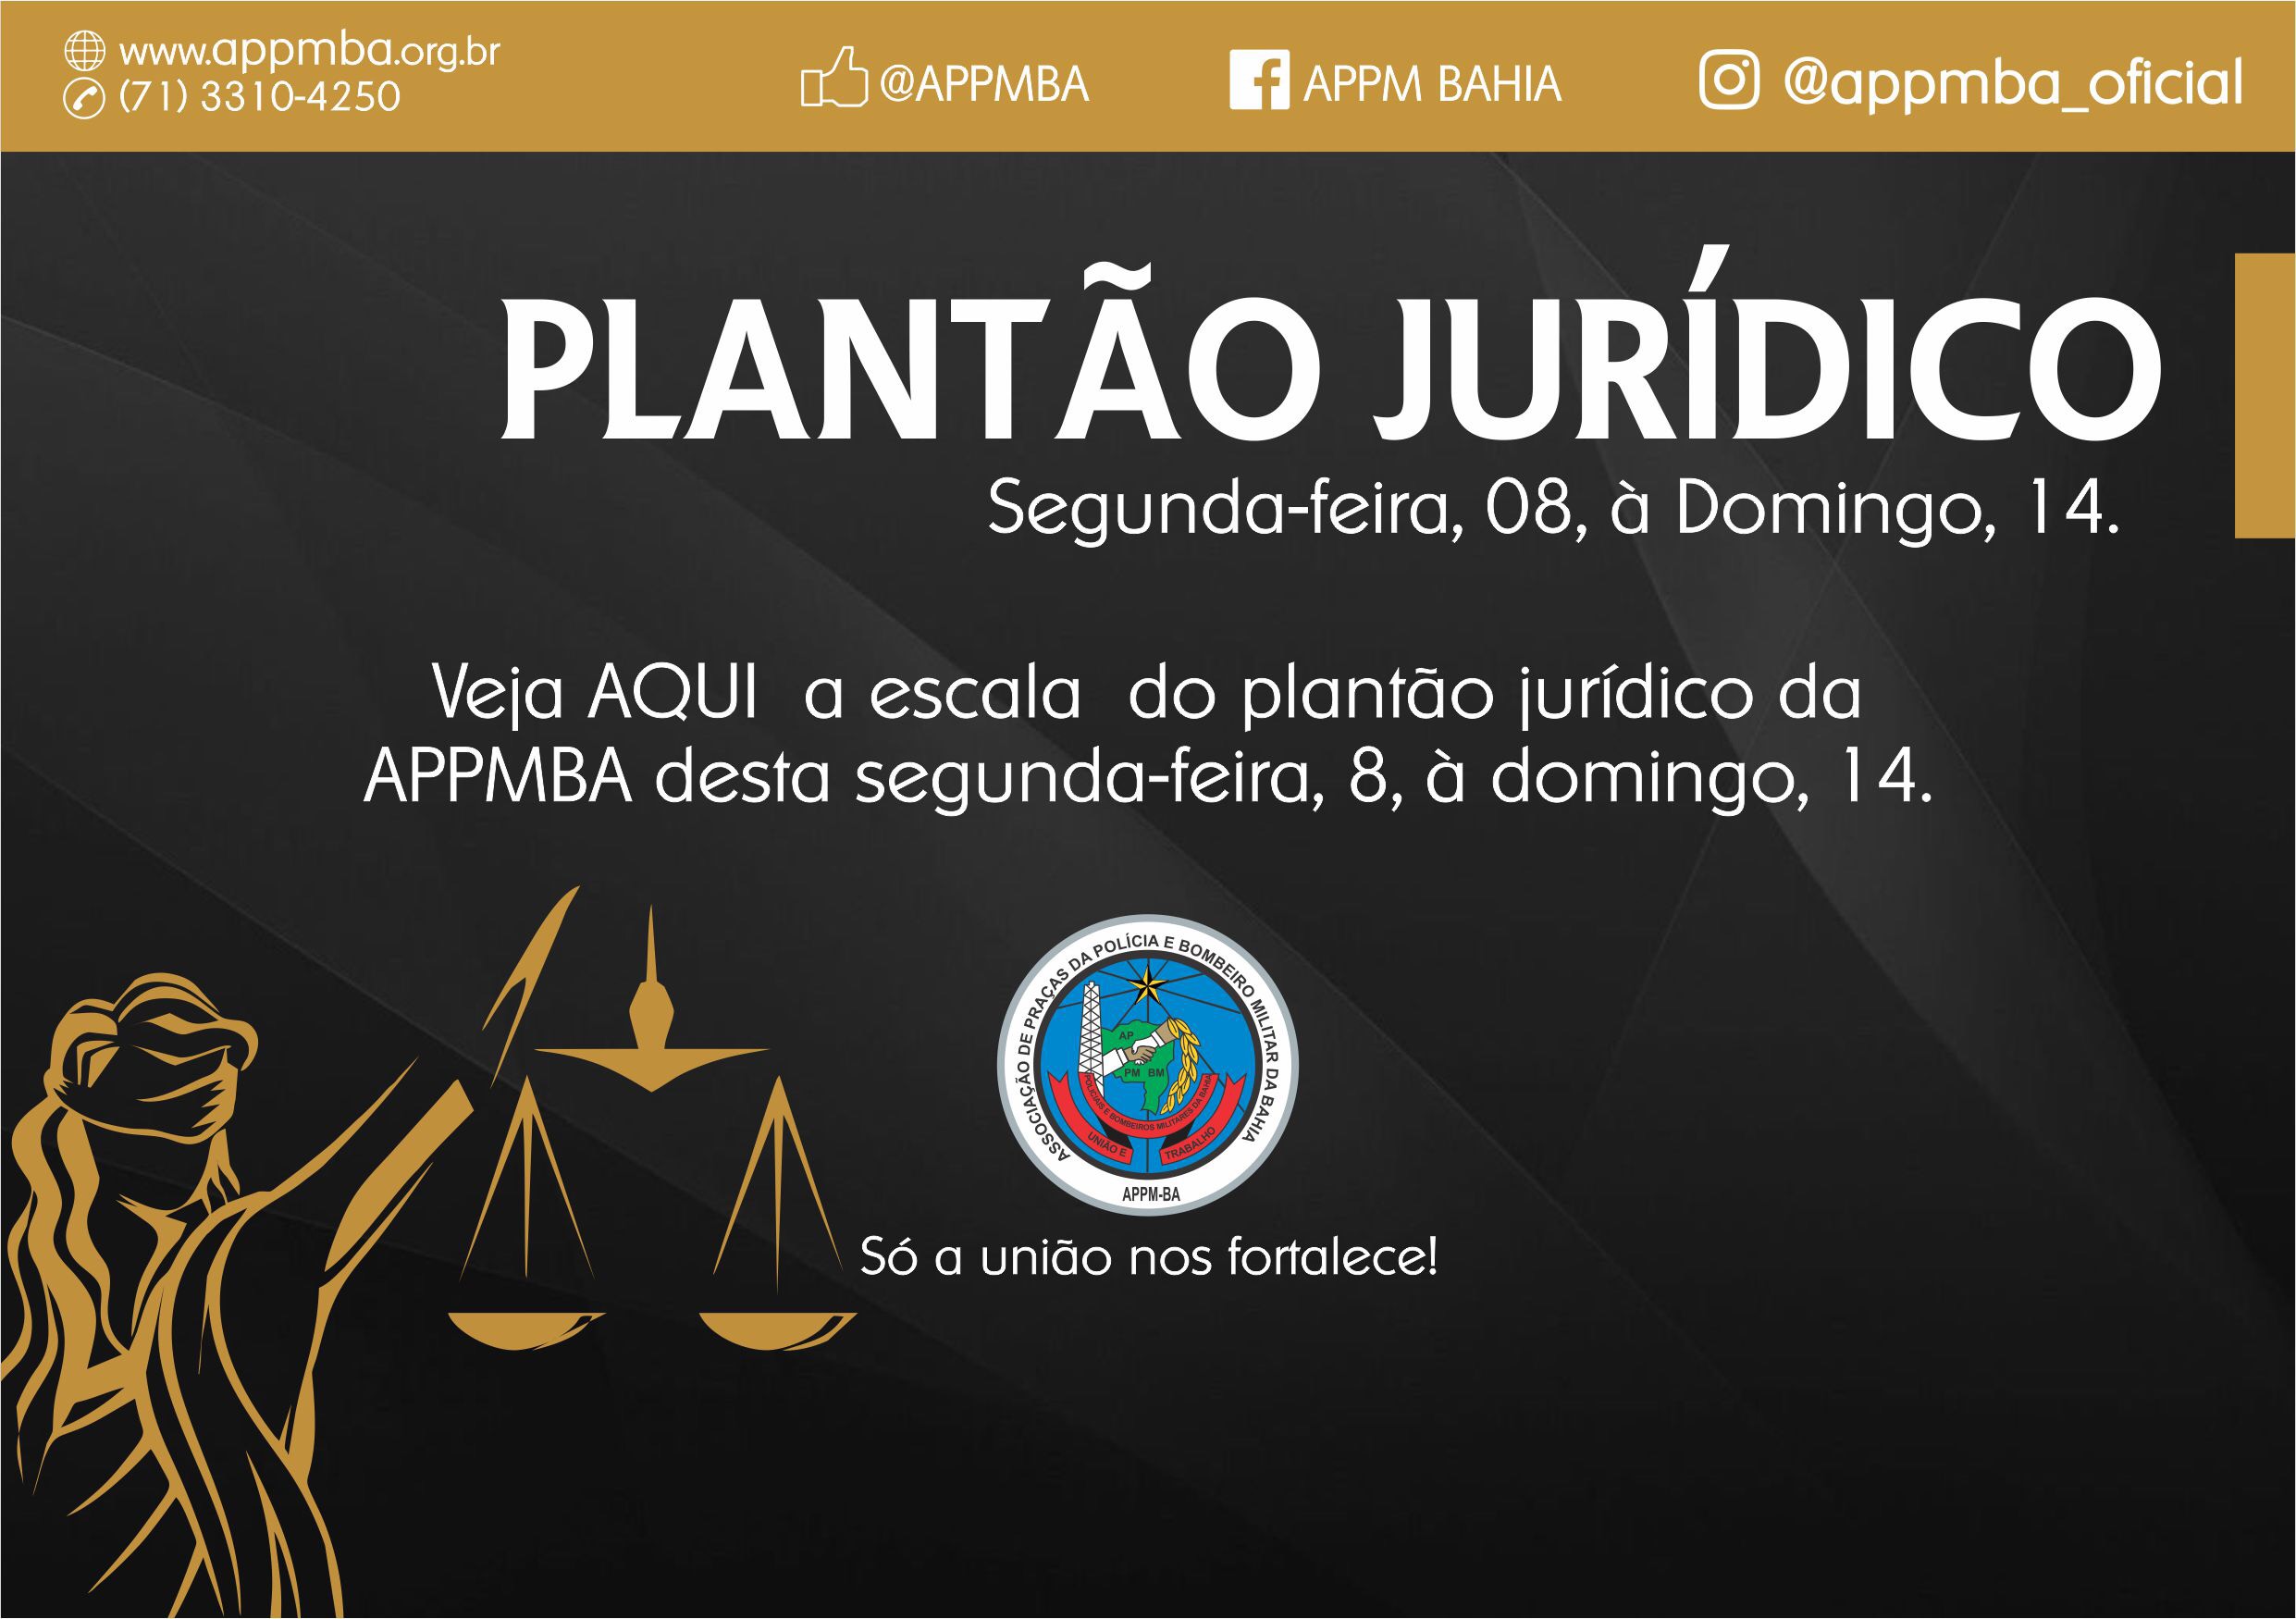 Plantão Jurídico APPM-BA, dias 08 à 14/4/2019